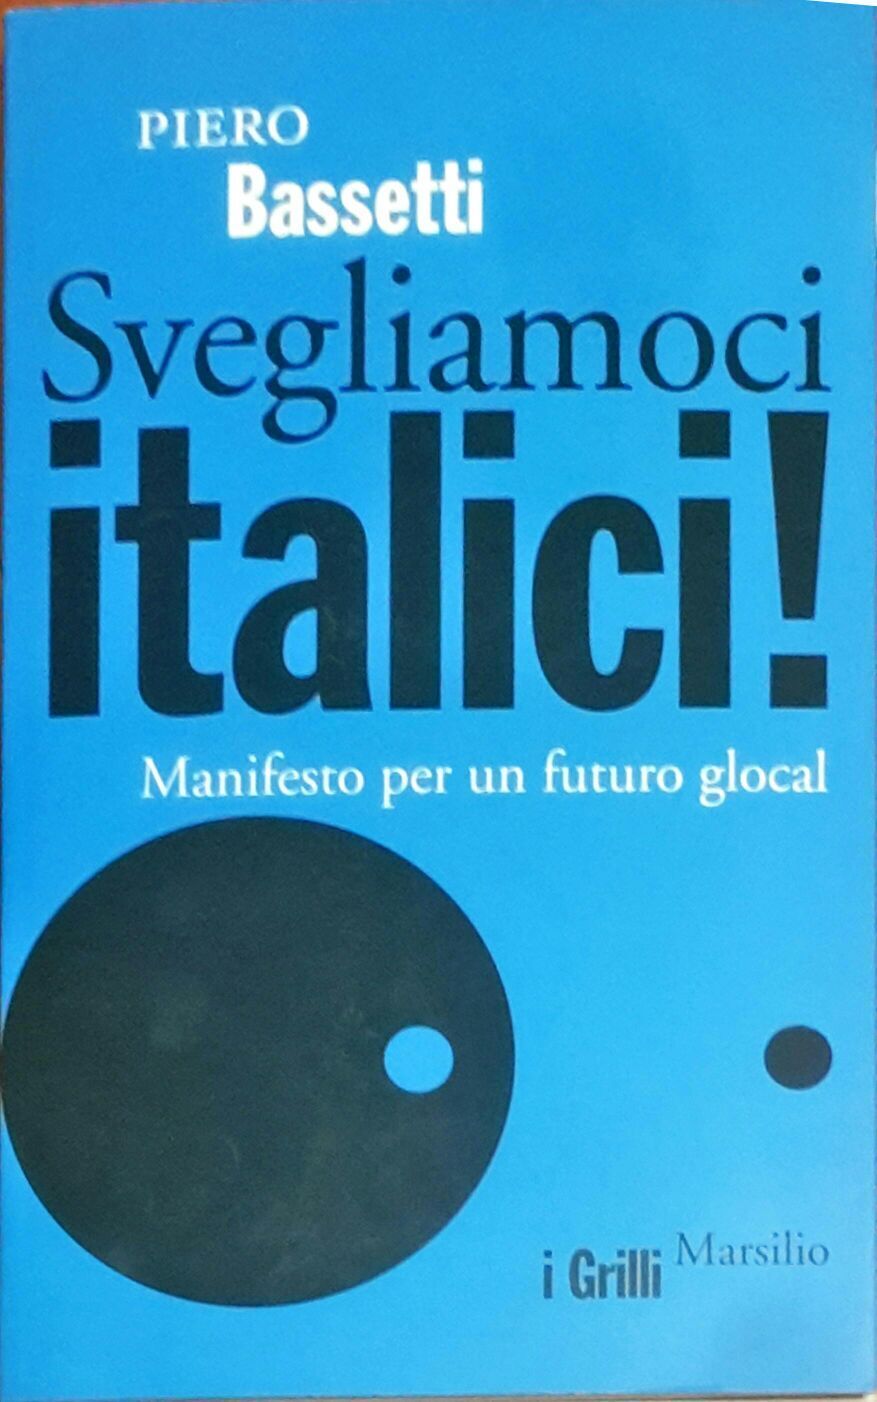 Svegliamoci italici! Manifesto per un futuro glocal - Piero Bassetti - Marsilio 